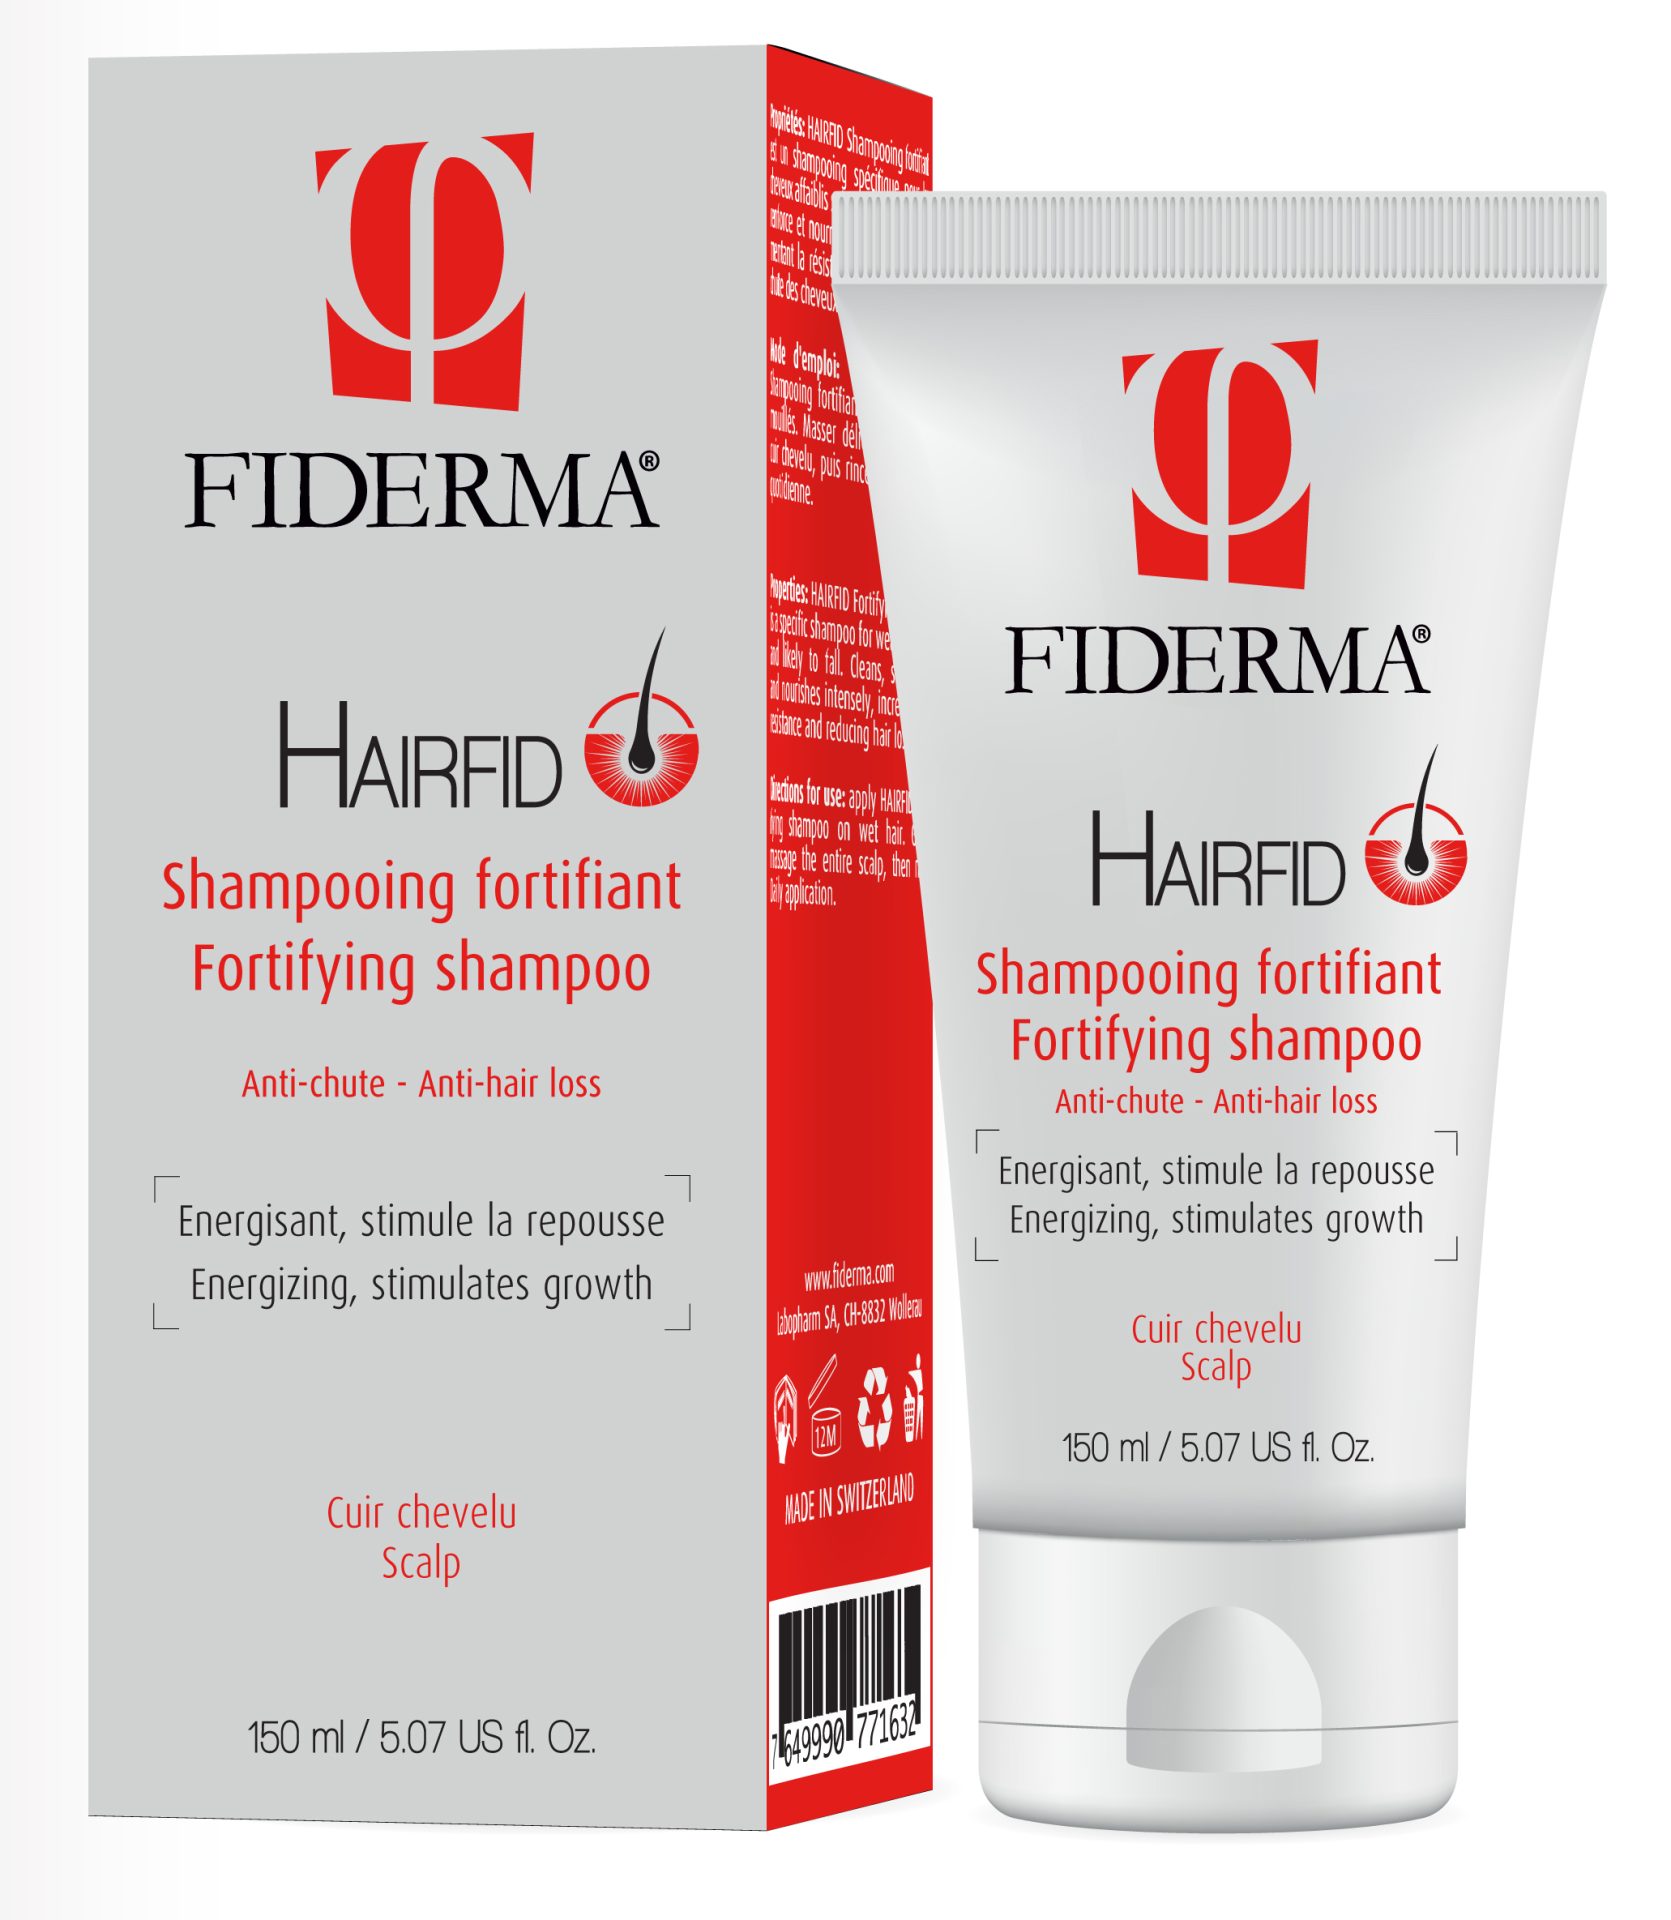 Fiderma Hairfid utrjevalni šampon proti izpadanju las, za okrepitev lasišča in stimulacijo rasti las, 150 ml